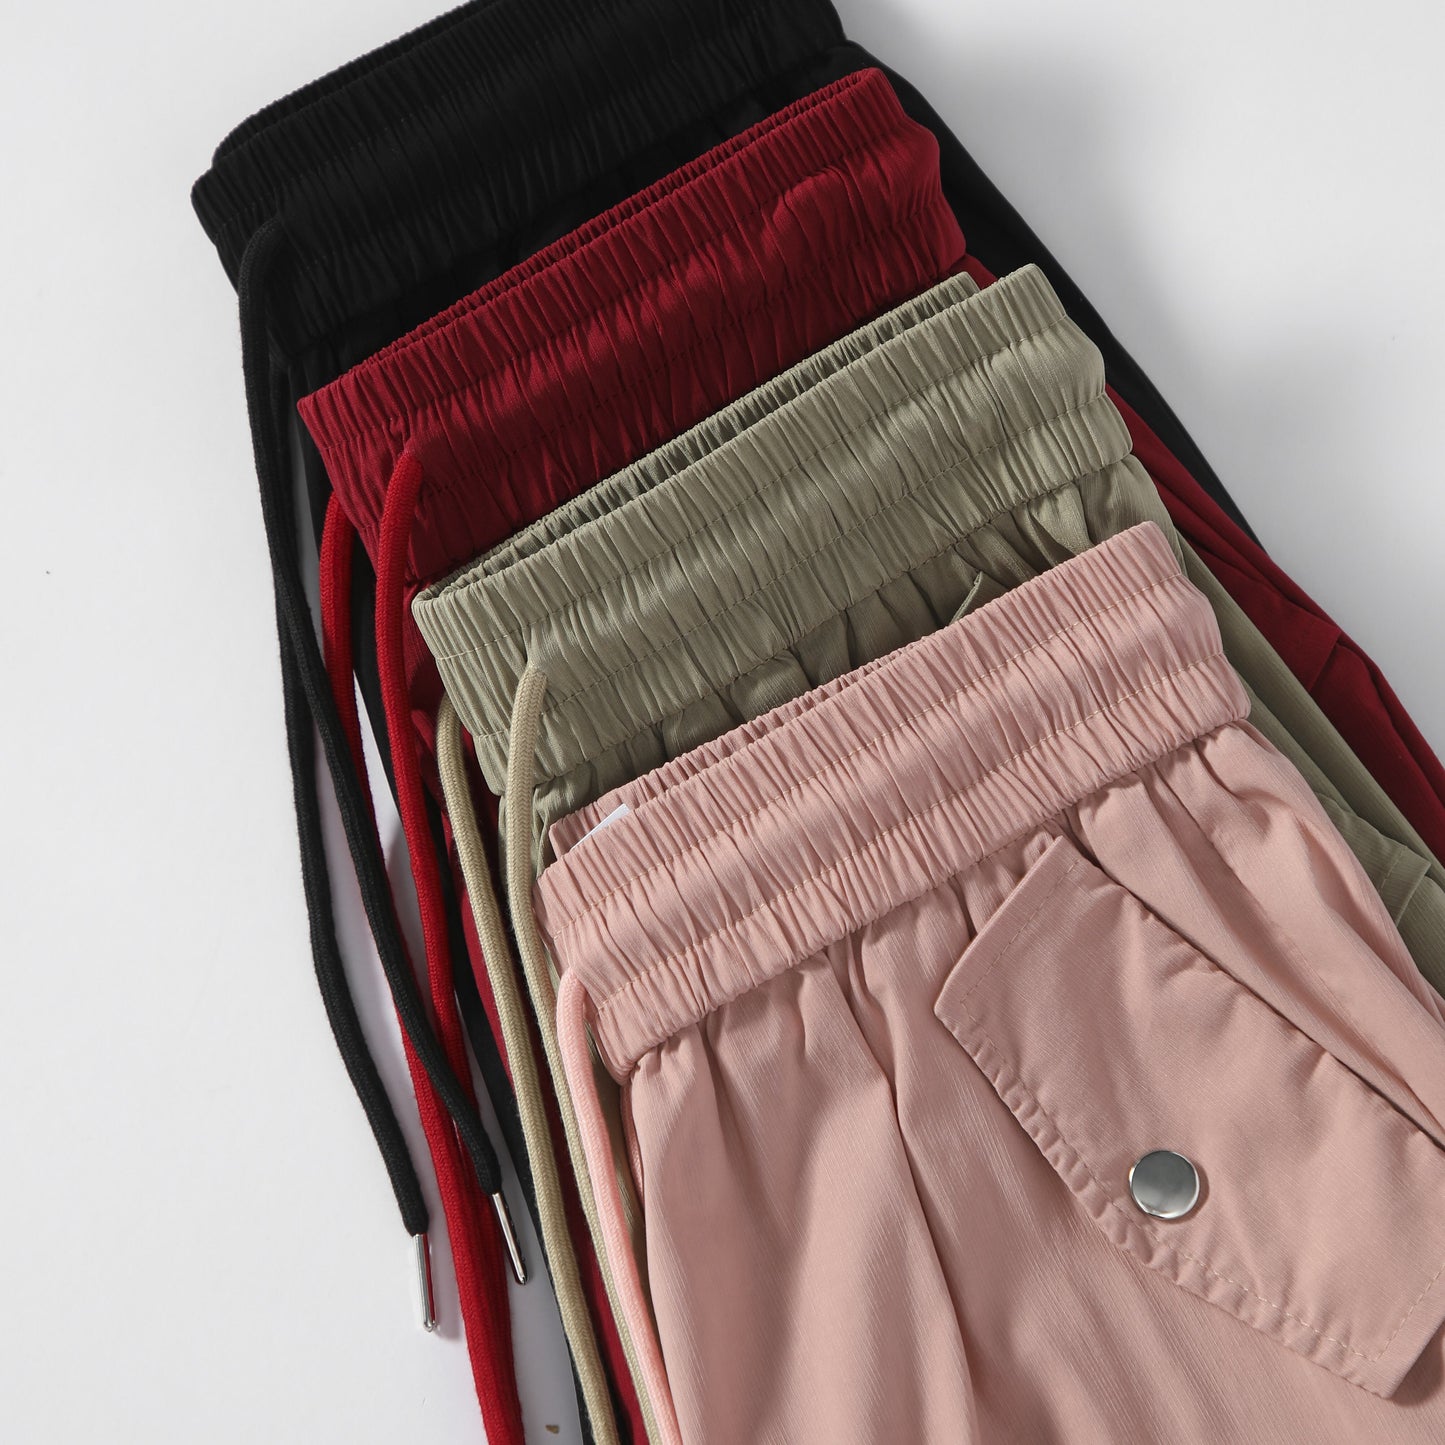 Pantalon cargo polyvalent à taille haute, style urbain, séchage rapide